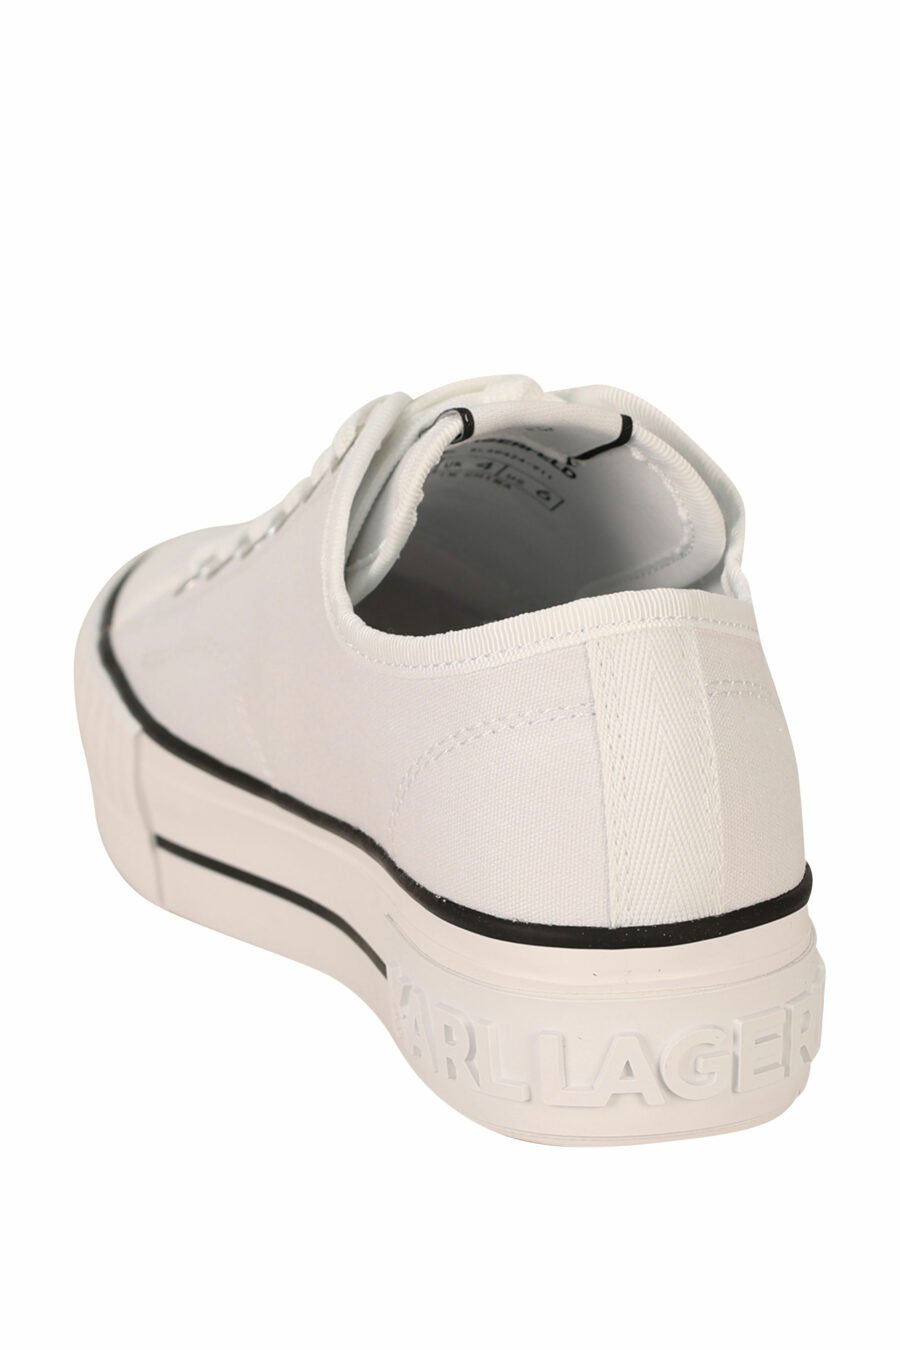 Zapatillas blancas estilo "converse" con minilogo de goma "karl" - 5059529384639 3